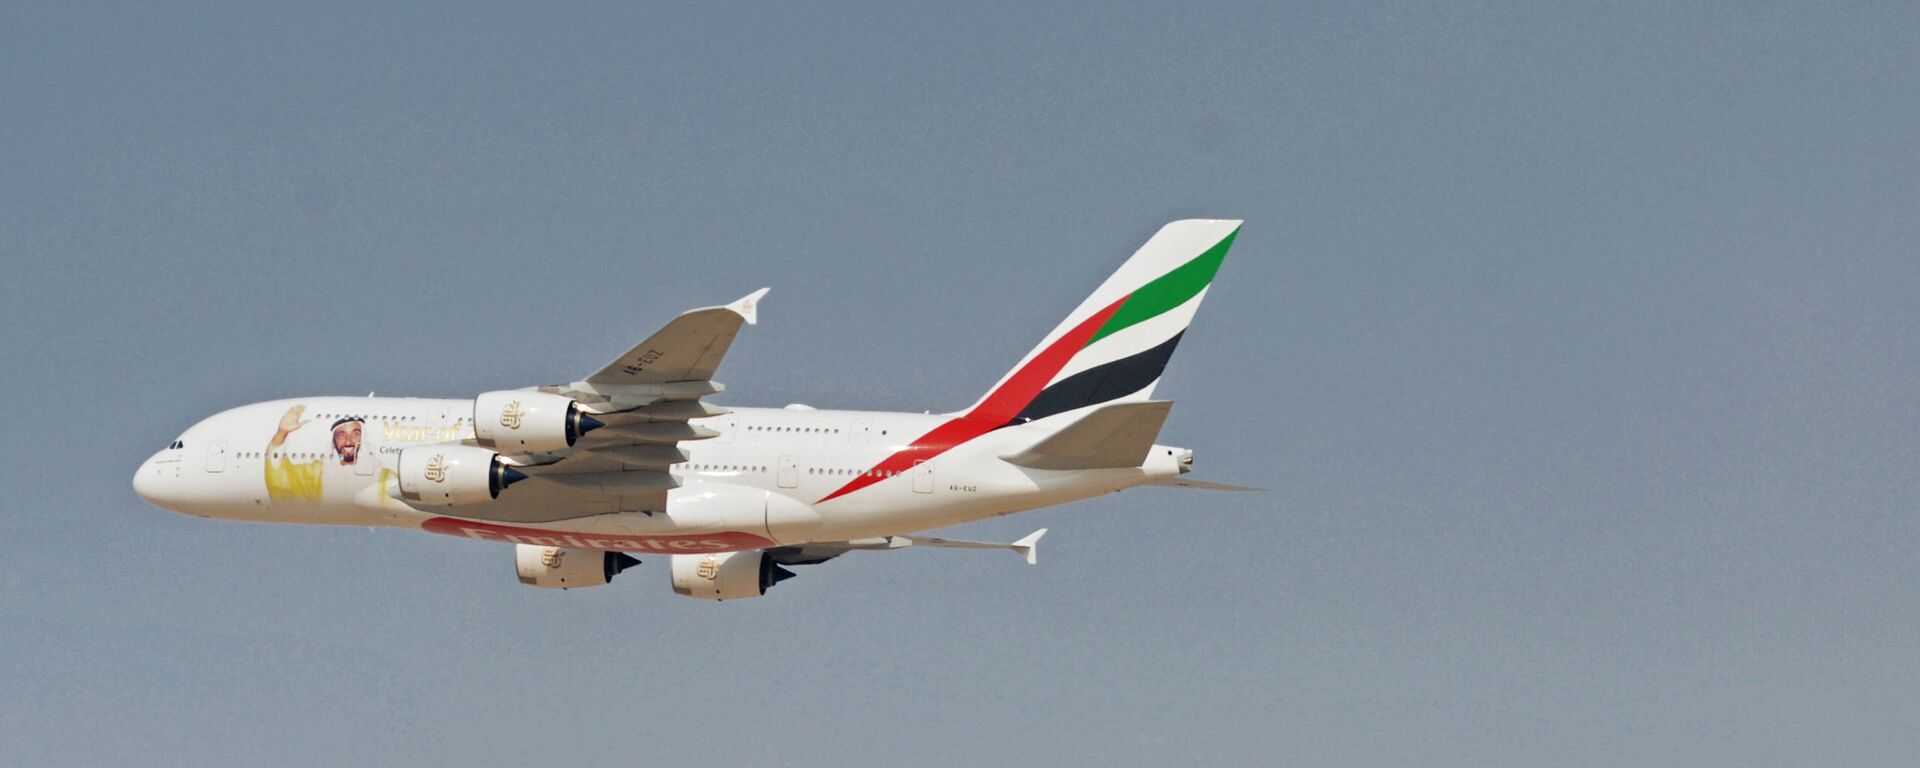 معرض دبي الجوي-الفضائي الدولي لعام 2017 (Dubai Airshow 2017) - طائرة آيروباص أ300-800 (A380-800) - سبوتنيك عربي, 1920, 01.12.2021